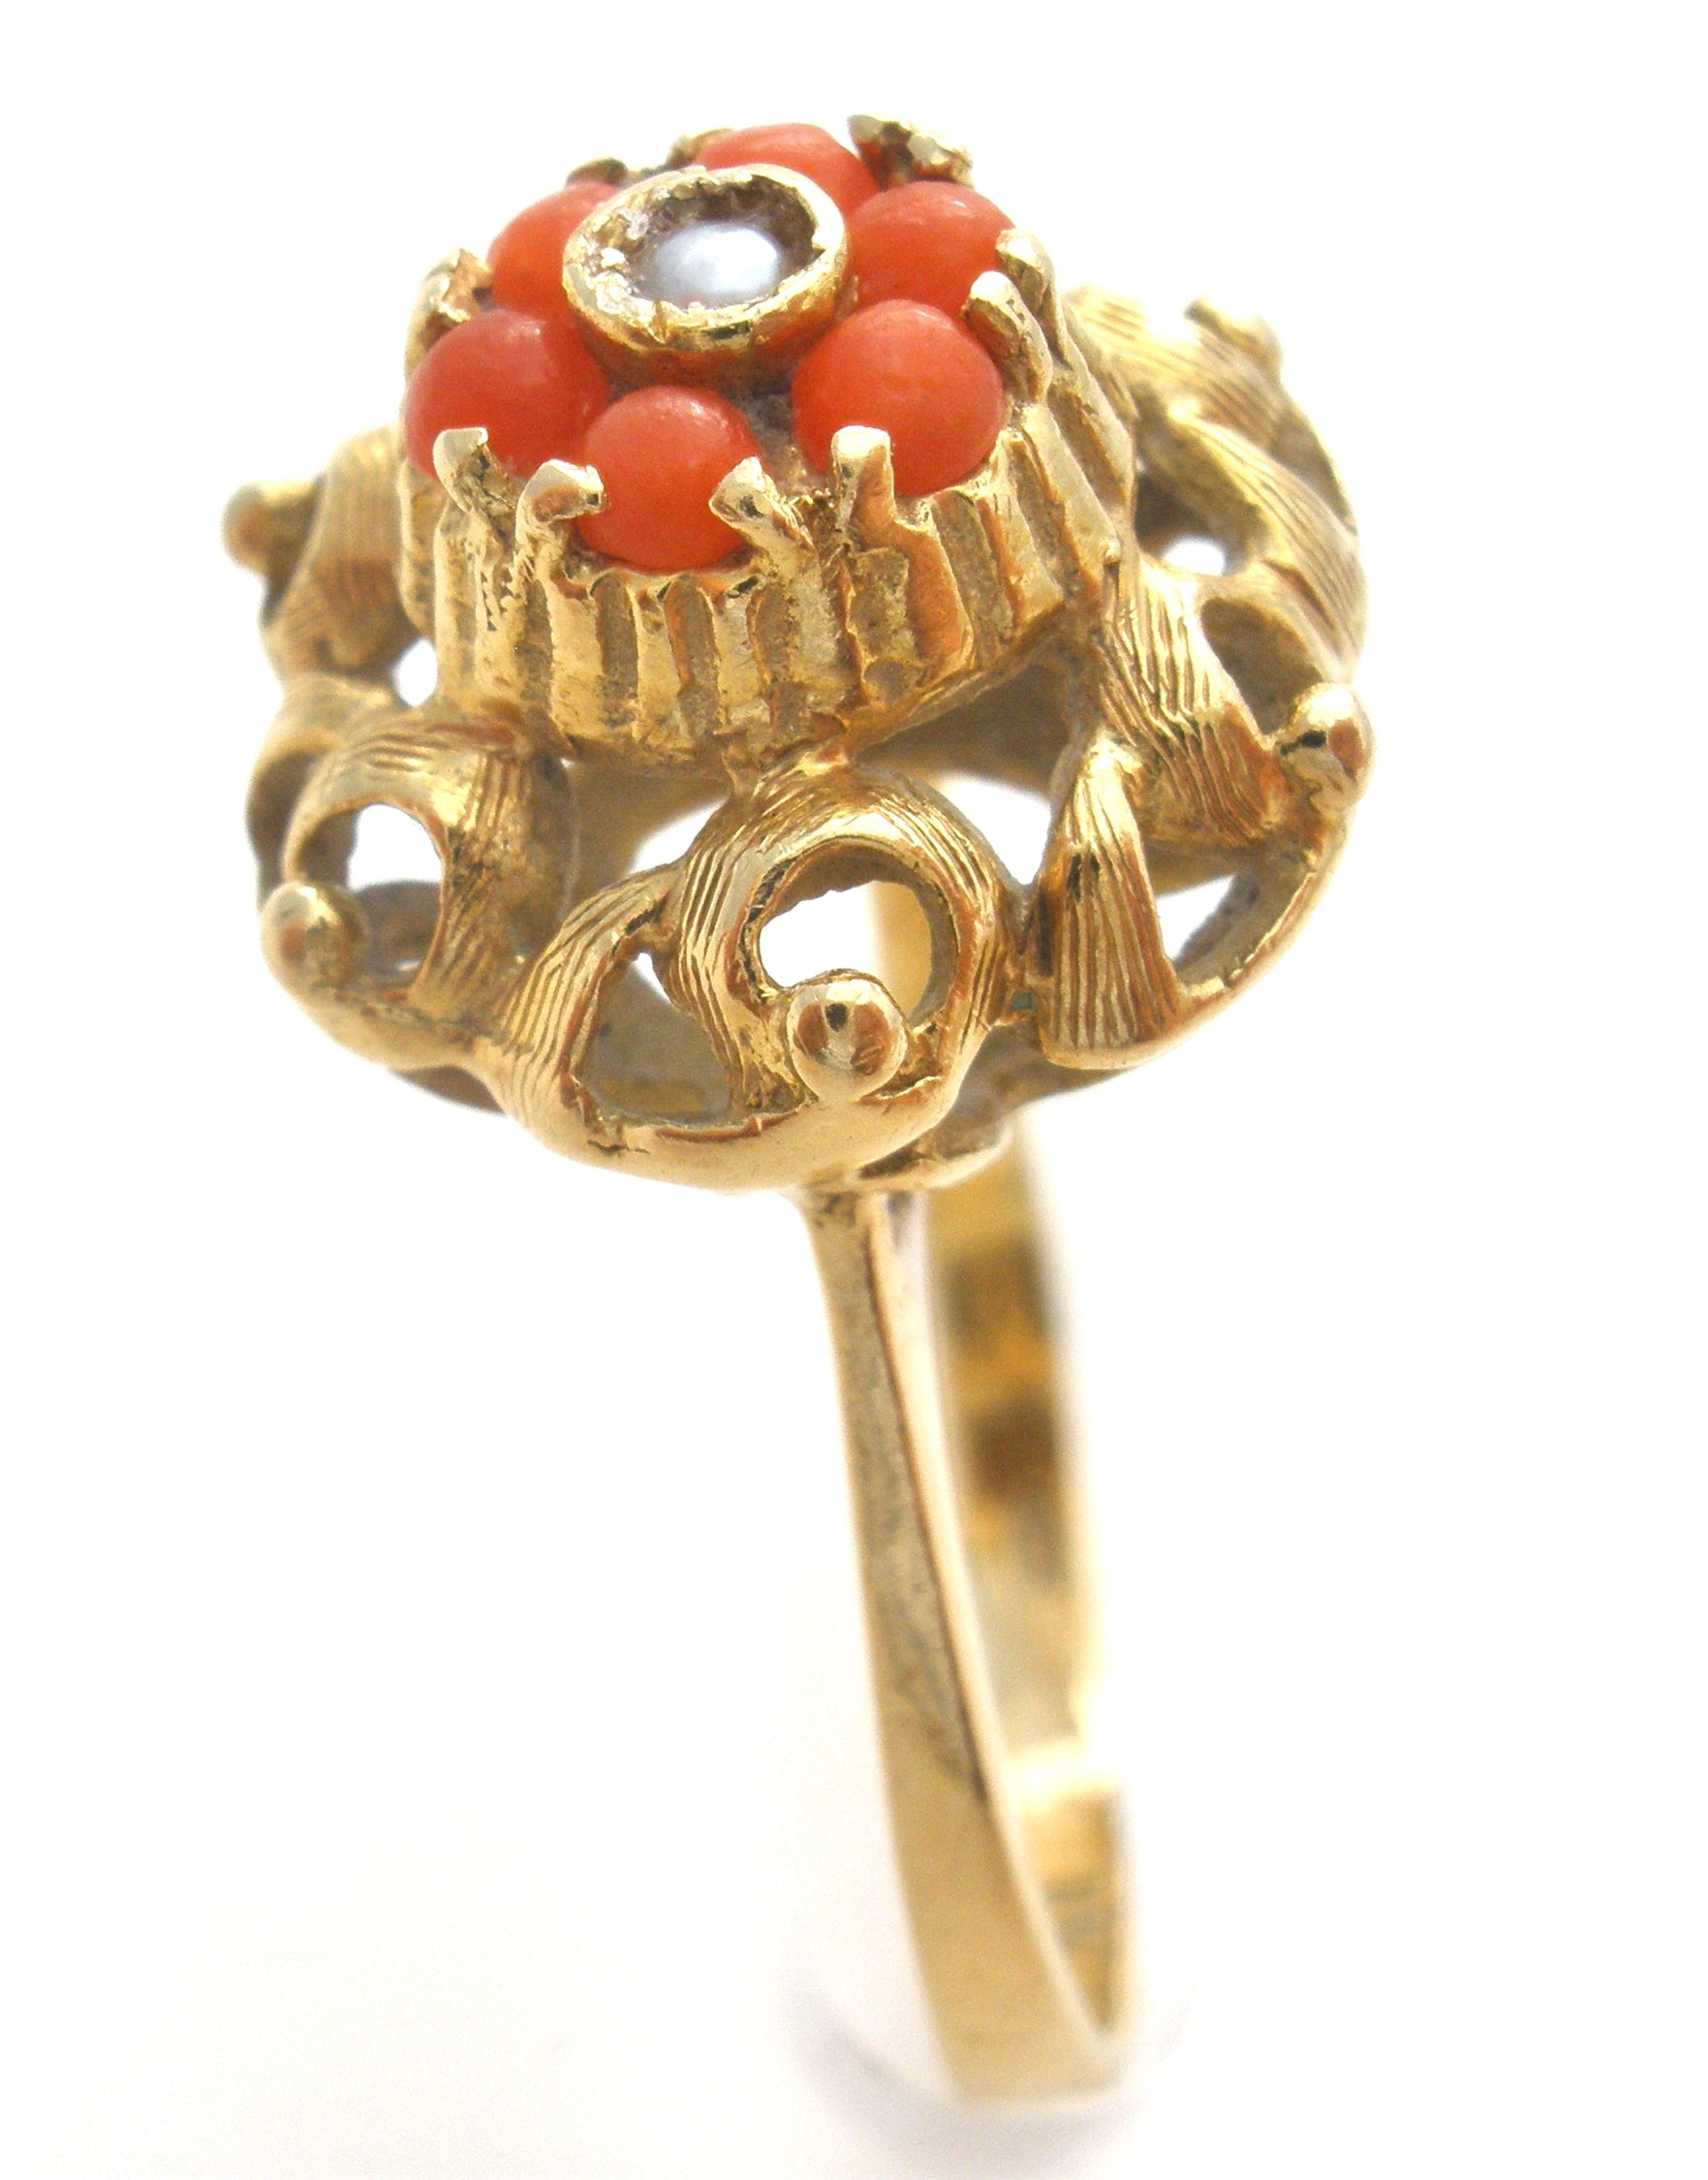 Buy Golden Jadau Statement Ring / Sabyasachi Pearl Ring / Matte Gold  Cocktail Ring / Bridal Ring / Rajwadi Ring / Jadau Rajasthani Ring Online  in India - Etsy